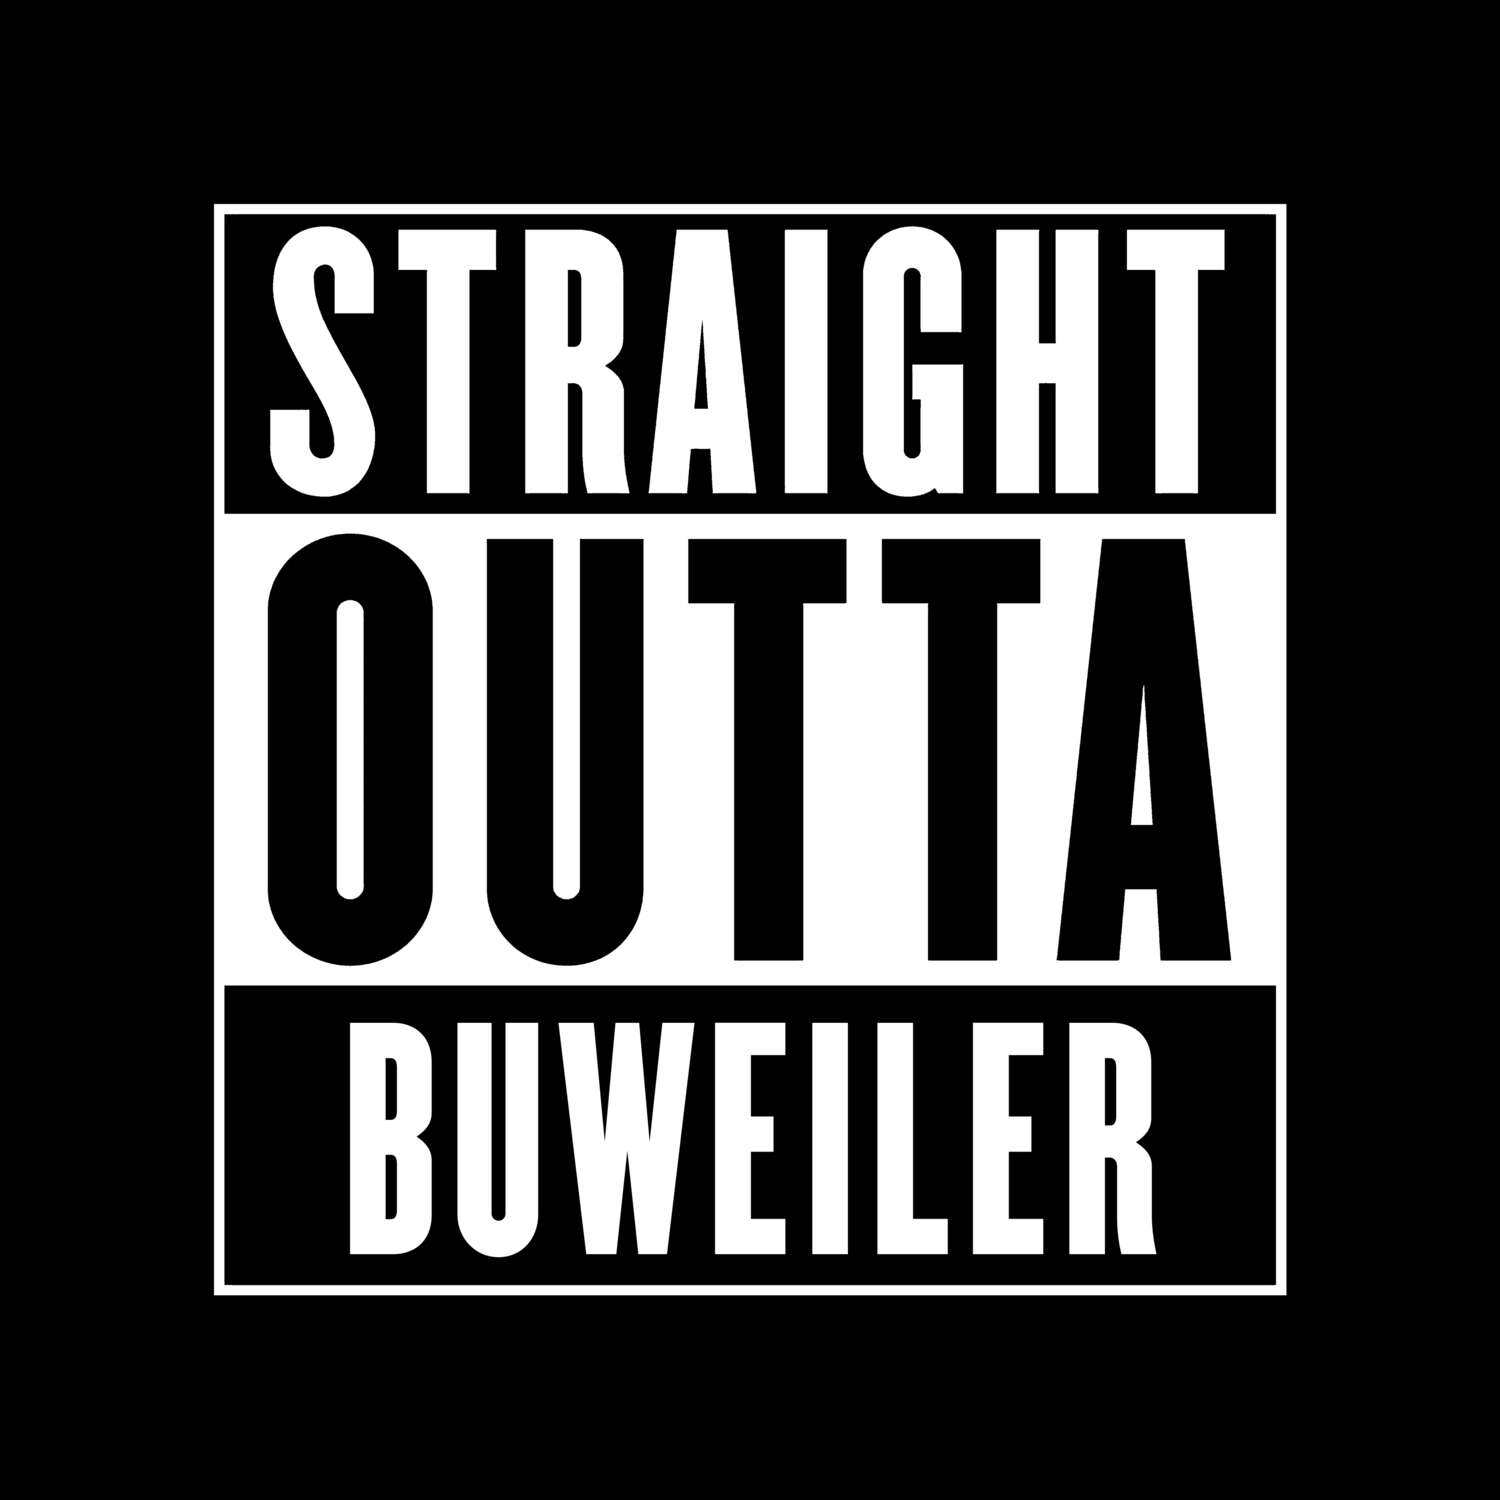 Buweiler T-Shirt »Straight Outta«